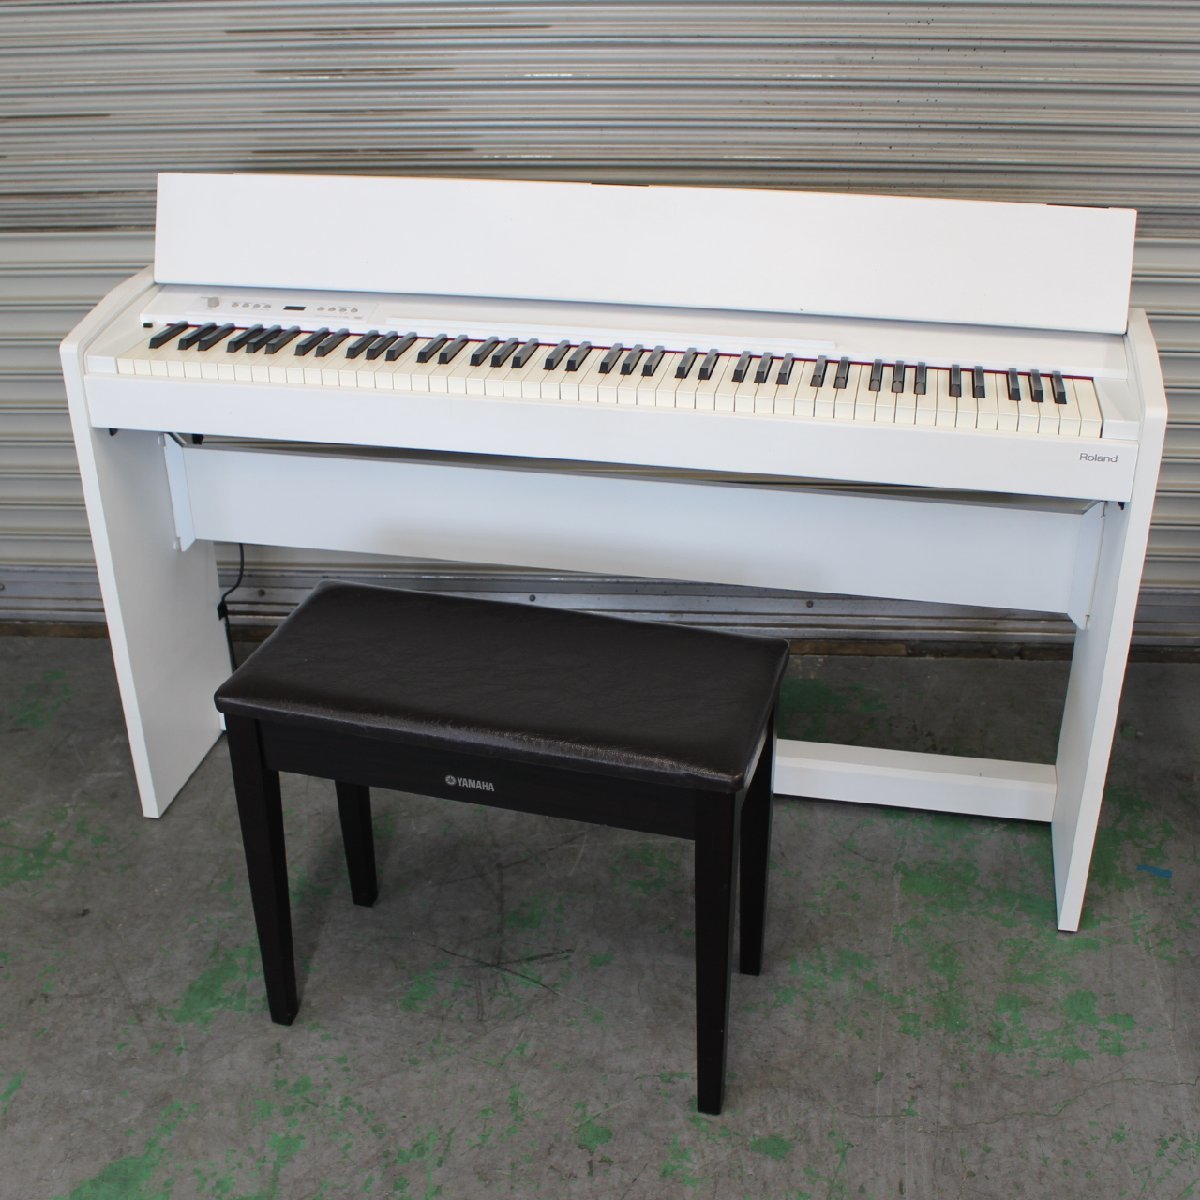 川崎市川崎区にて ローランド 電子ピアノ F-120-WH 2012年製 を出張買取させて頂きました。